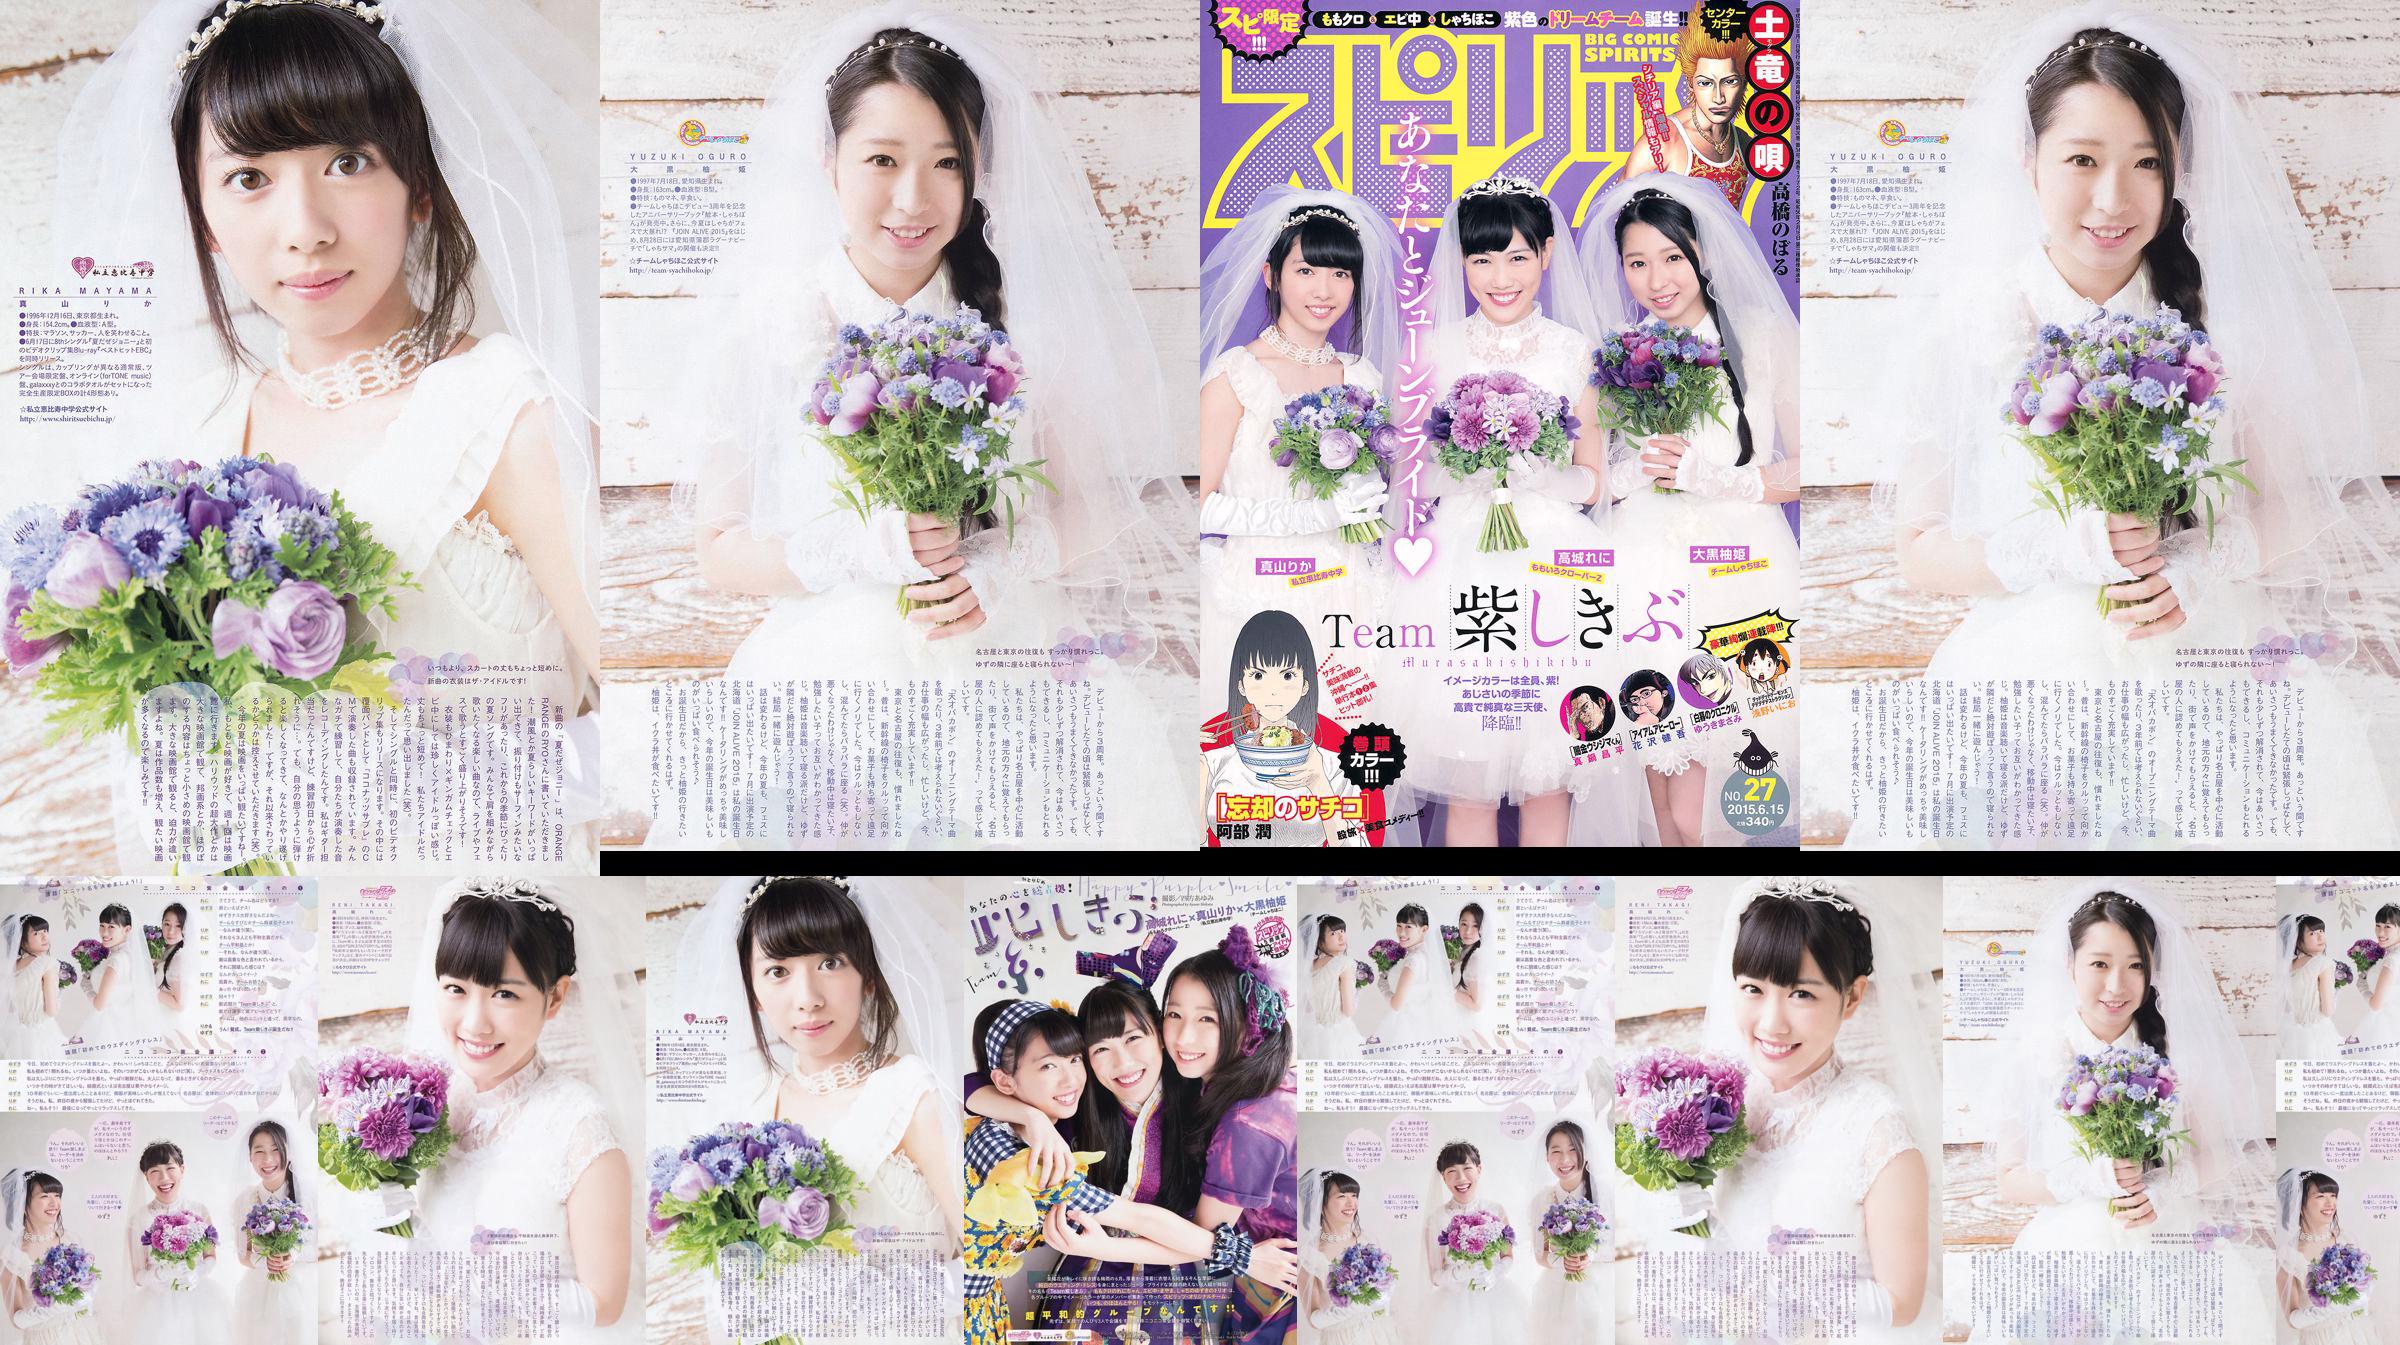 [Weekly Big Comic Spirits] 高城れに 大黒柚姫 真山りか 2015年No.27 写真杂志 No.db98e1 第2頁